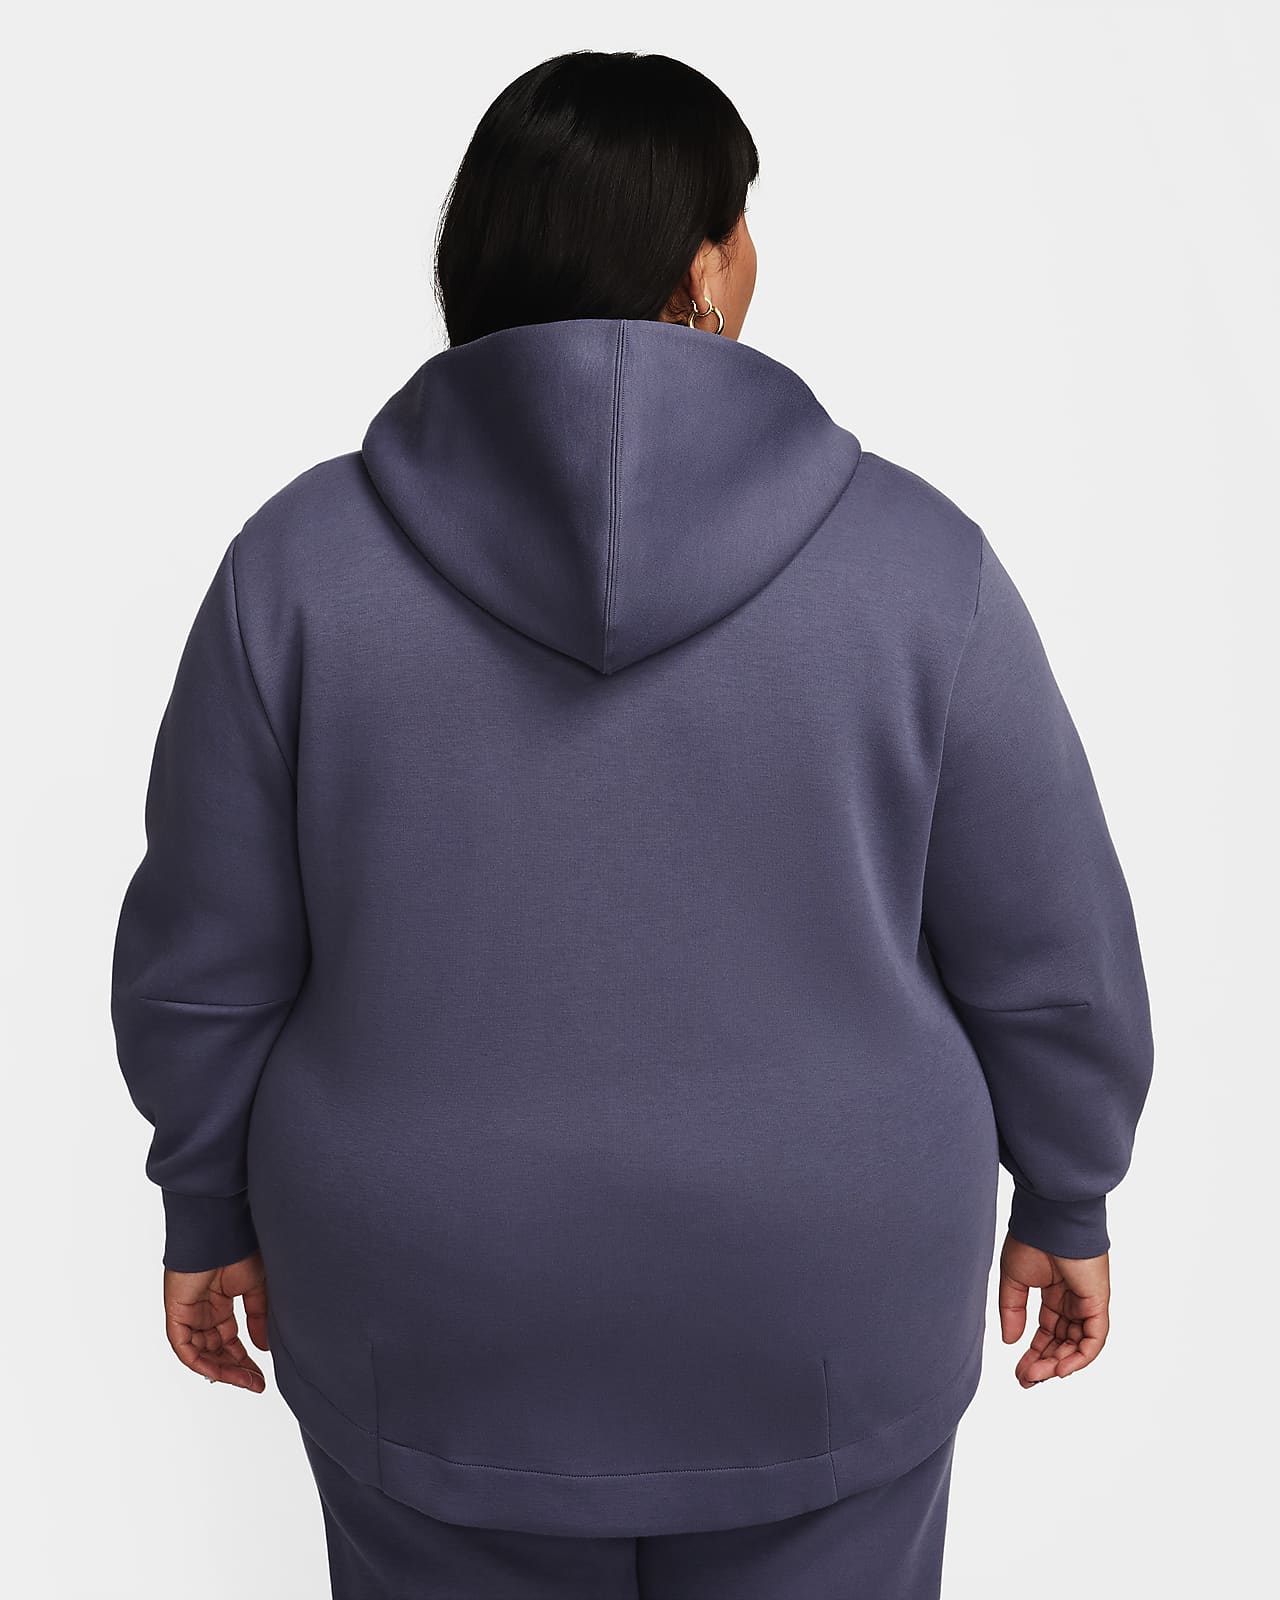 NIKE Nike Air Women's Fleece Full-Zip Hoodie, Black Women's Hooded  Sweatshirt